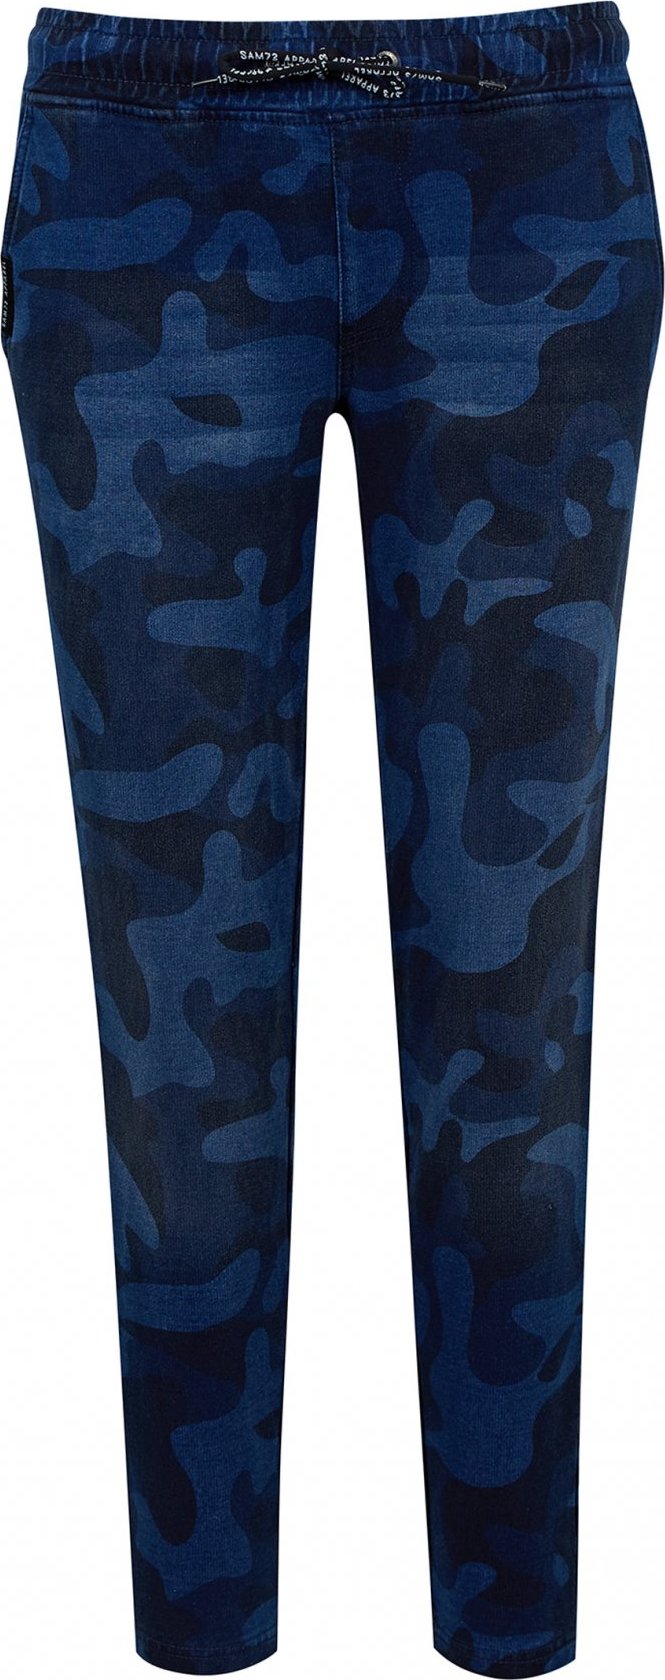 Dámské kalhoty SAM 73 Ivy modré Velikost: L